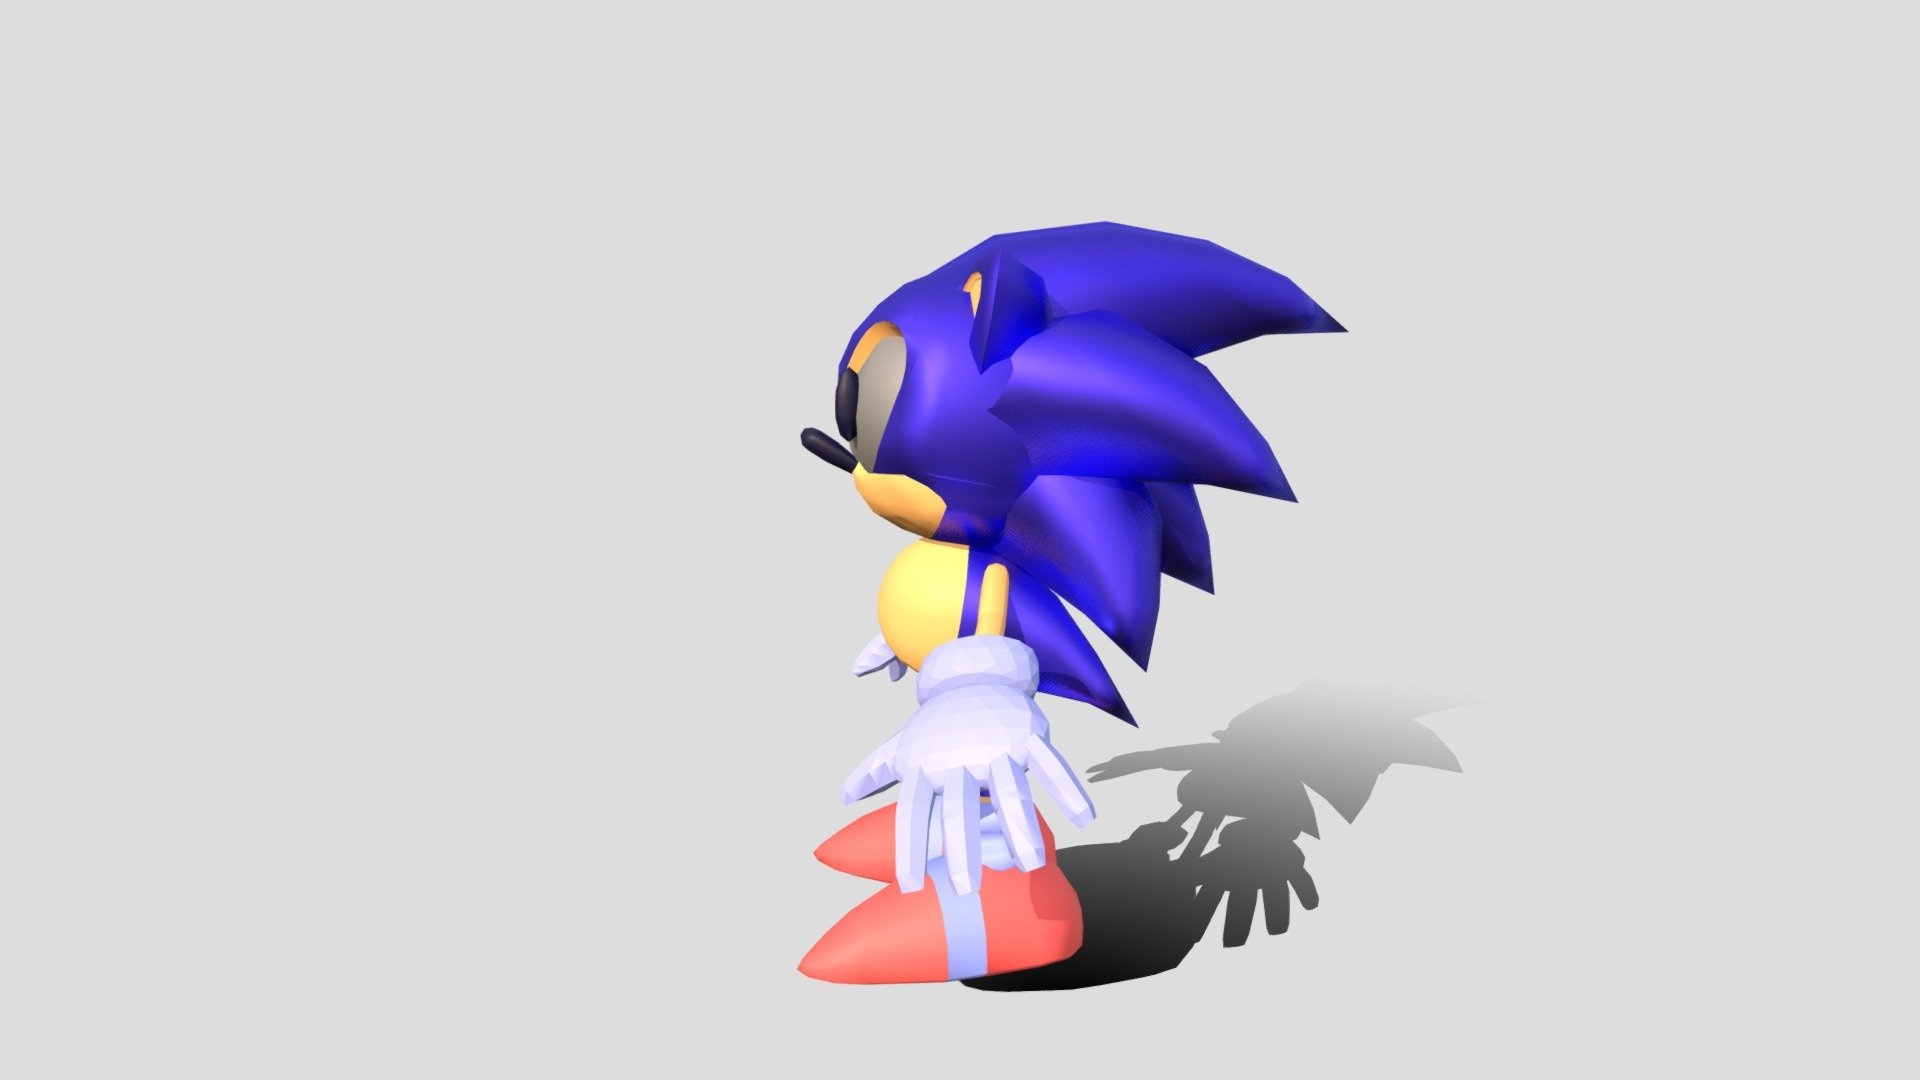 Sonic VRChat avatar: Dễ thương và đầy sáng tạo, Sonic VRChat avatar là lựa chọn hoàn hảo cho những ai muốn khám phá thế giới ảo một cách thú vị và độc đáo. Hãy thử tạo ra Sonic VRChat avatar của riêng bạn với các công cụ tạo avatar mới nhất và trang bị nó với những trang phục và phụ kiện mới nhất.